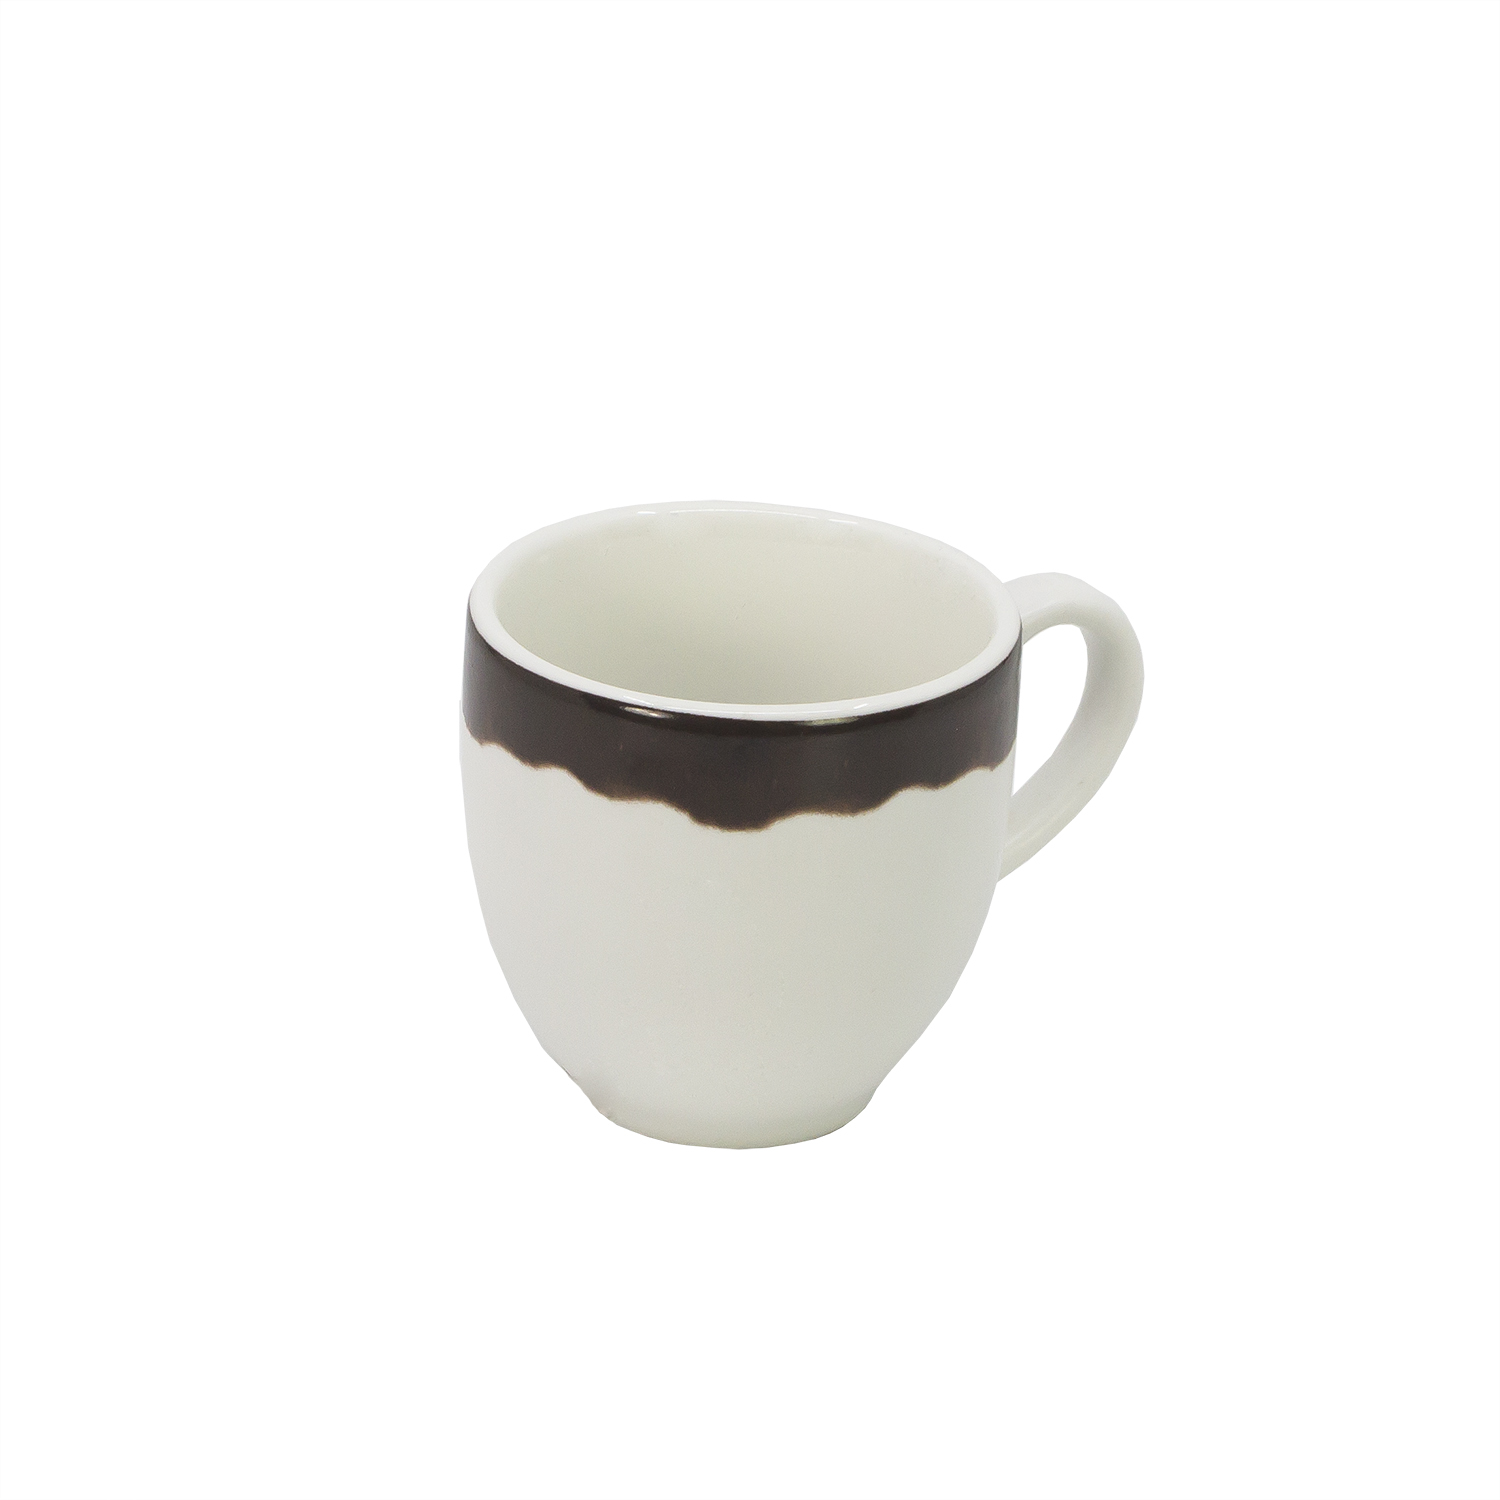 Чашка для эспрессо RAK Porcelain Woodart фарфор 90 мл Белый с коричневым (95120)